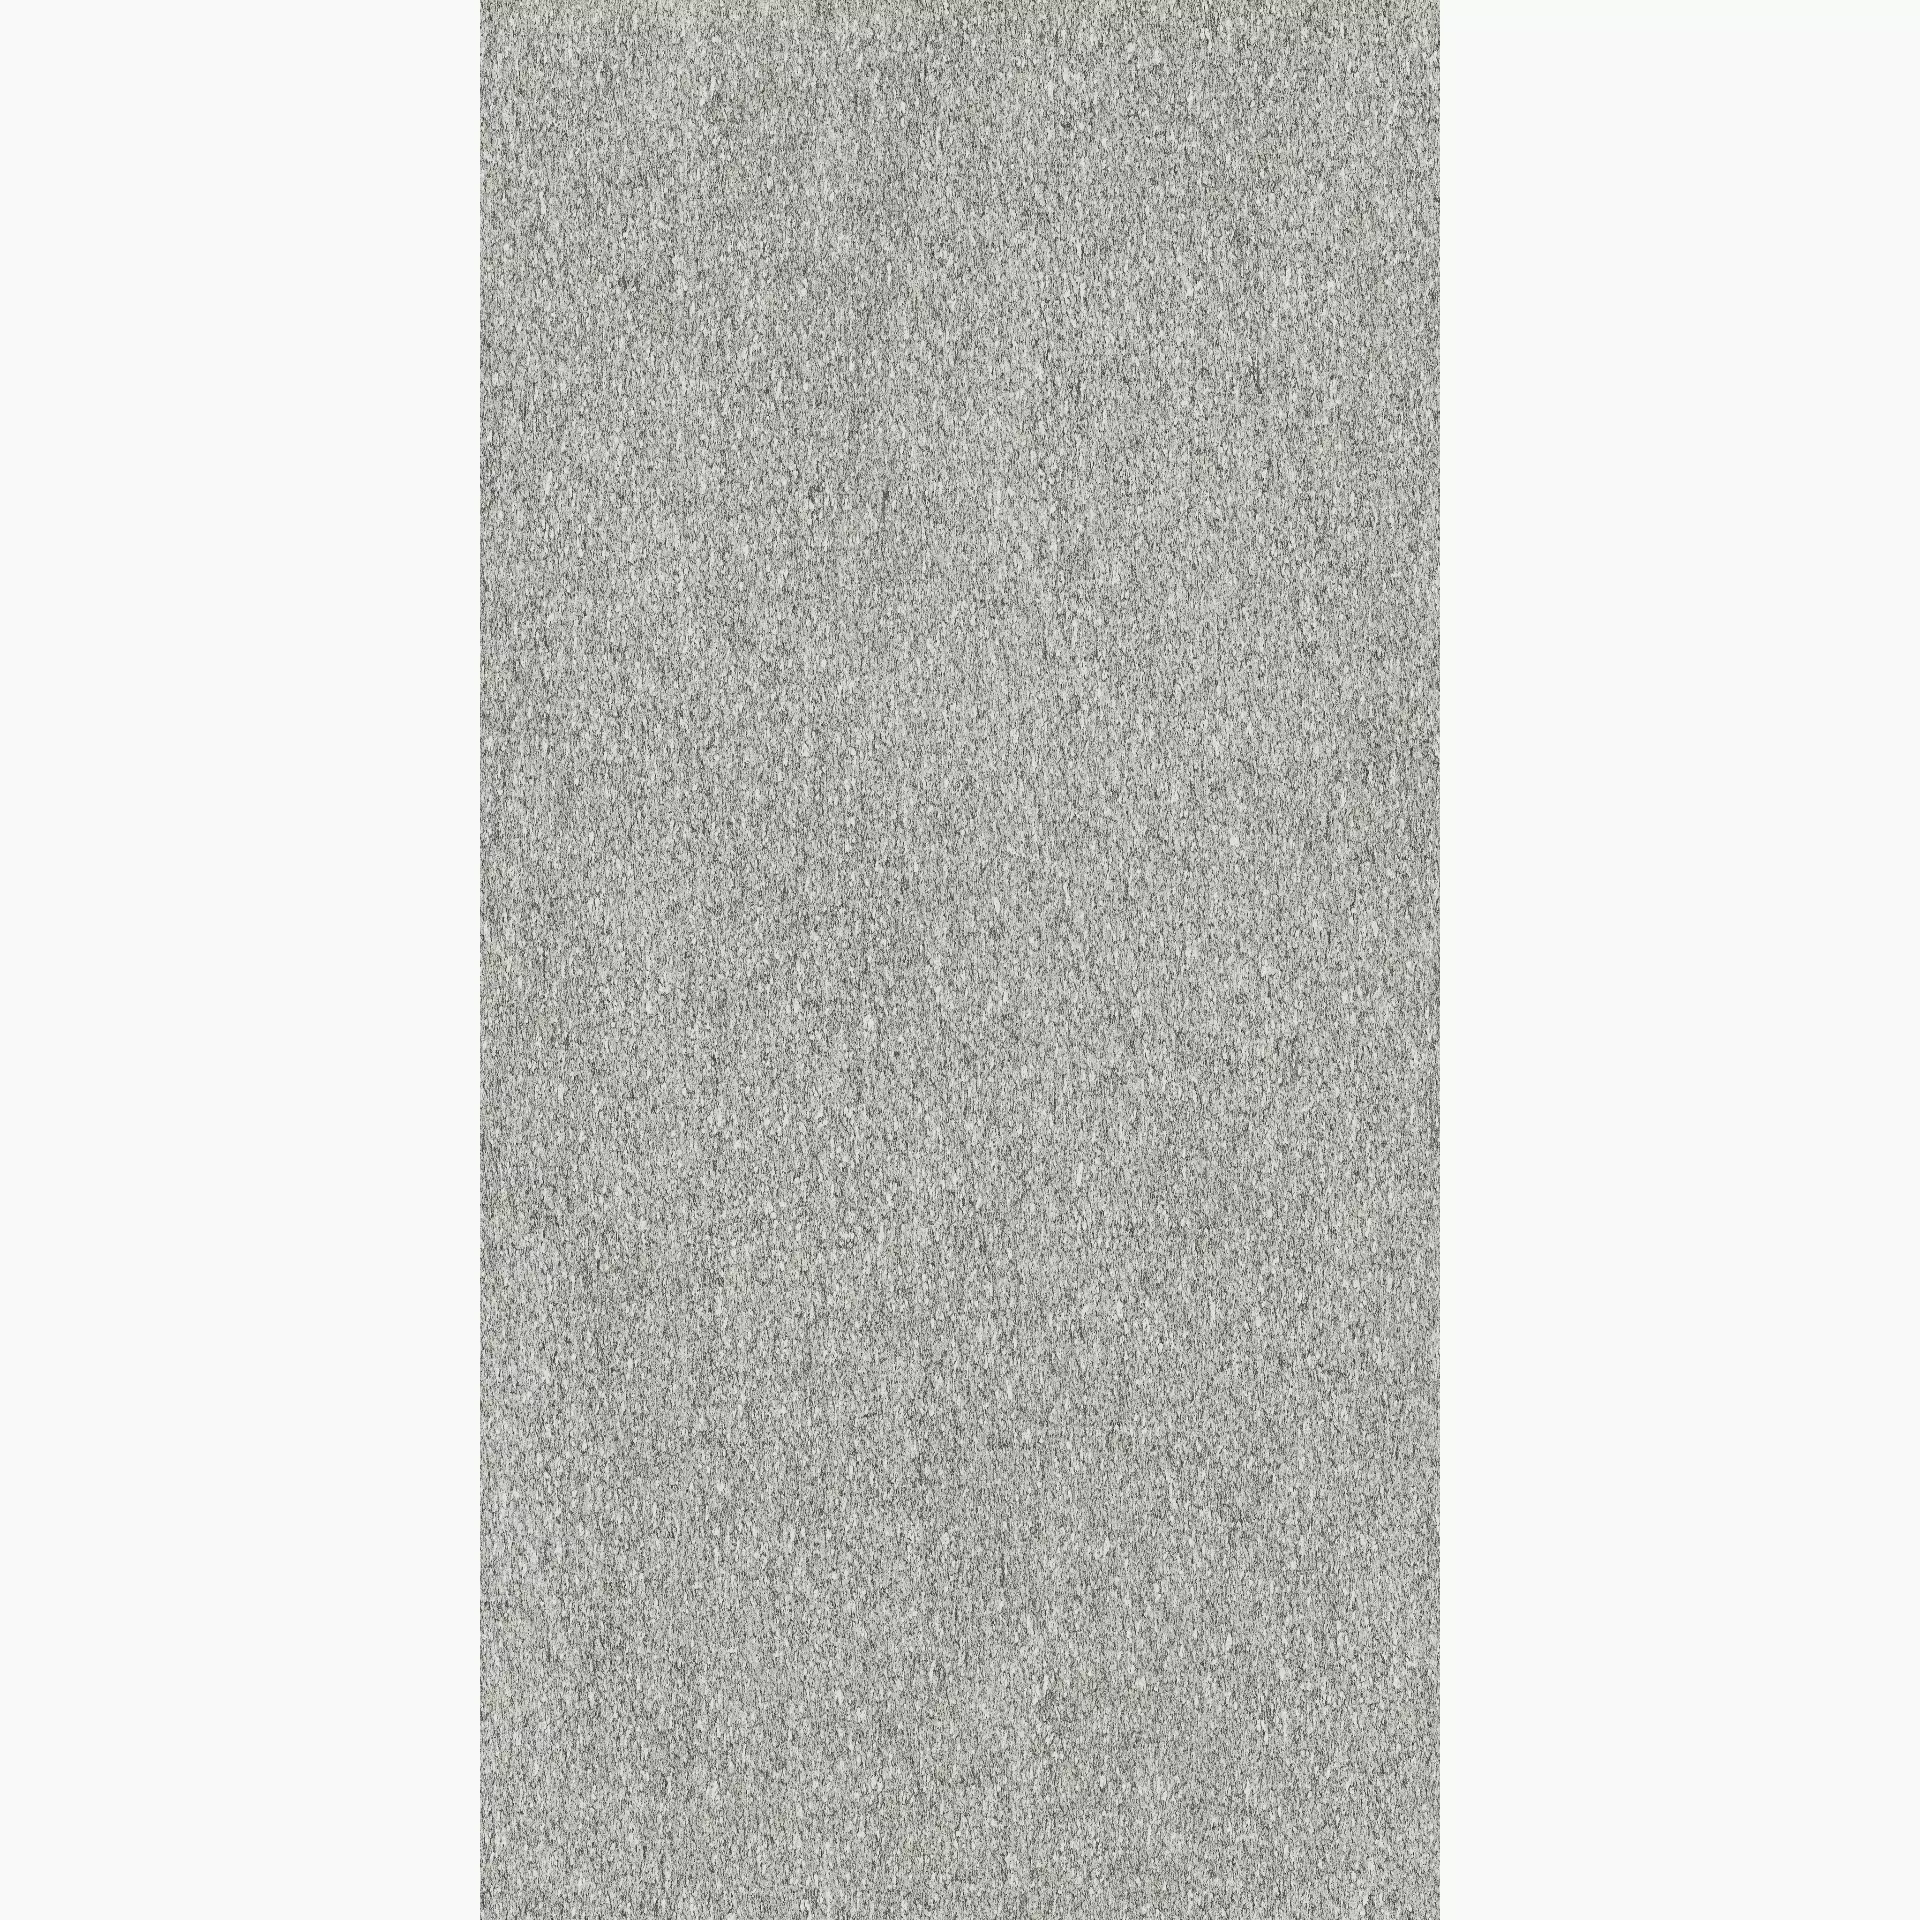 Florim Biotech Serizzo Stone Naturale – Matt Serizzo Stone 778782 matt natur 120x240cm rektifiziert 6mm